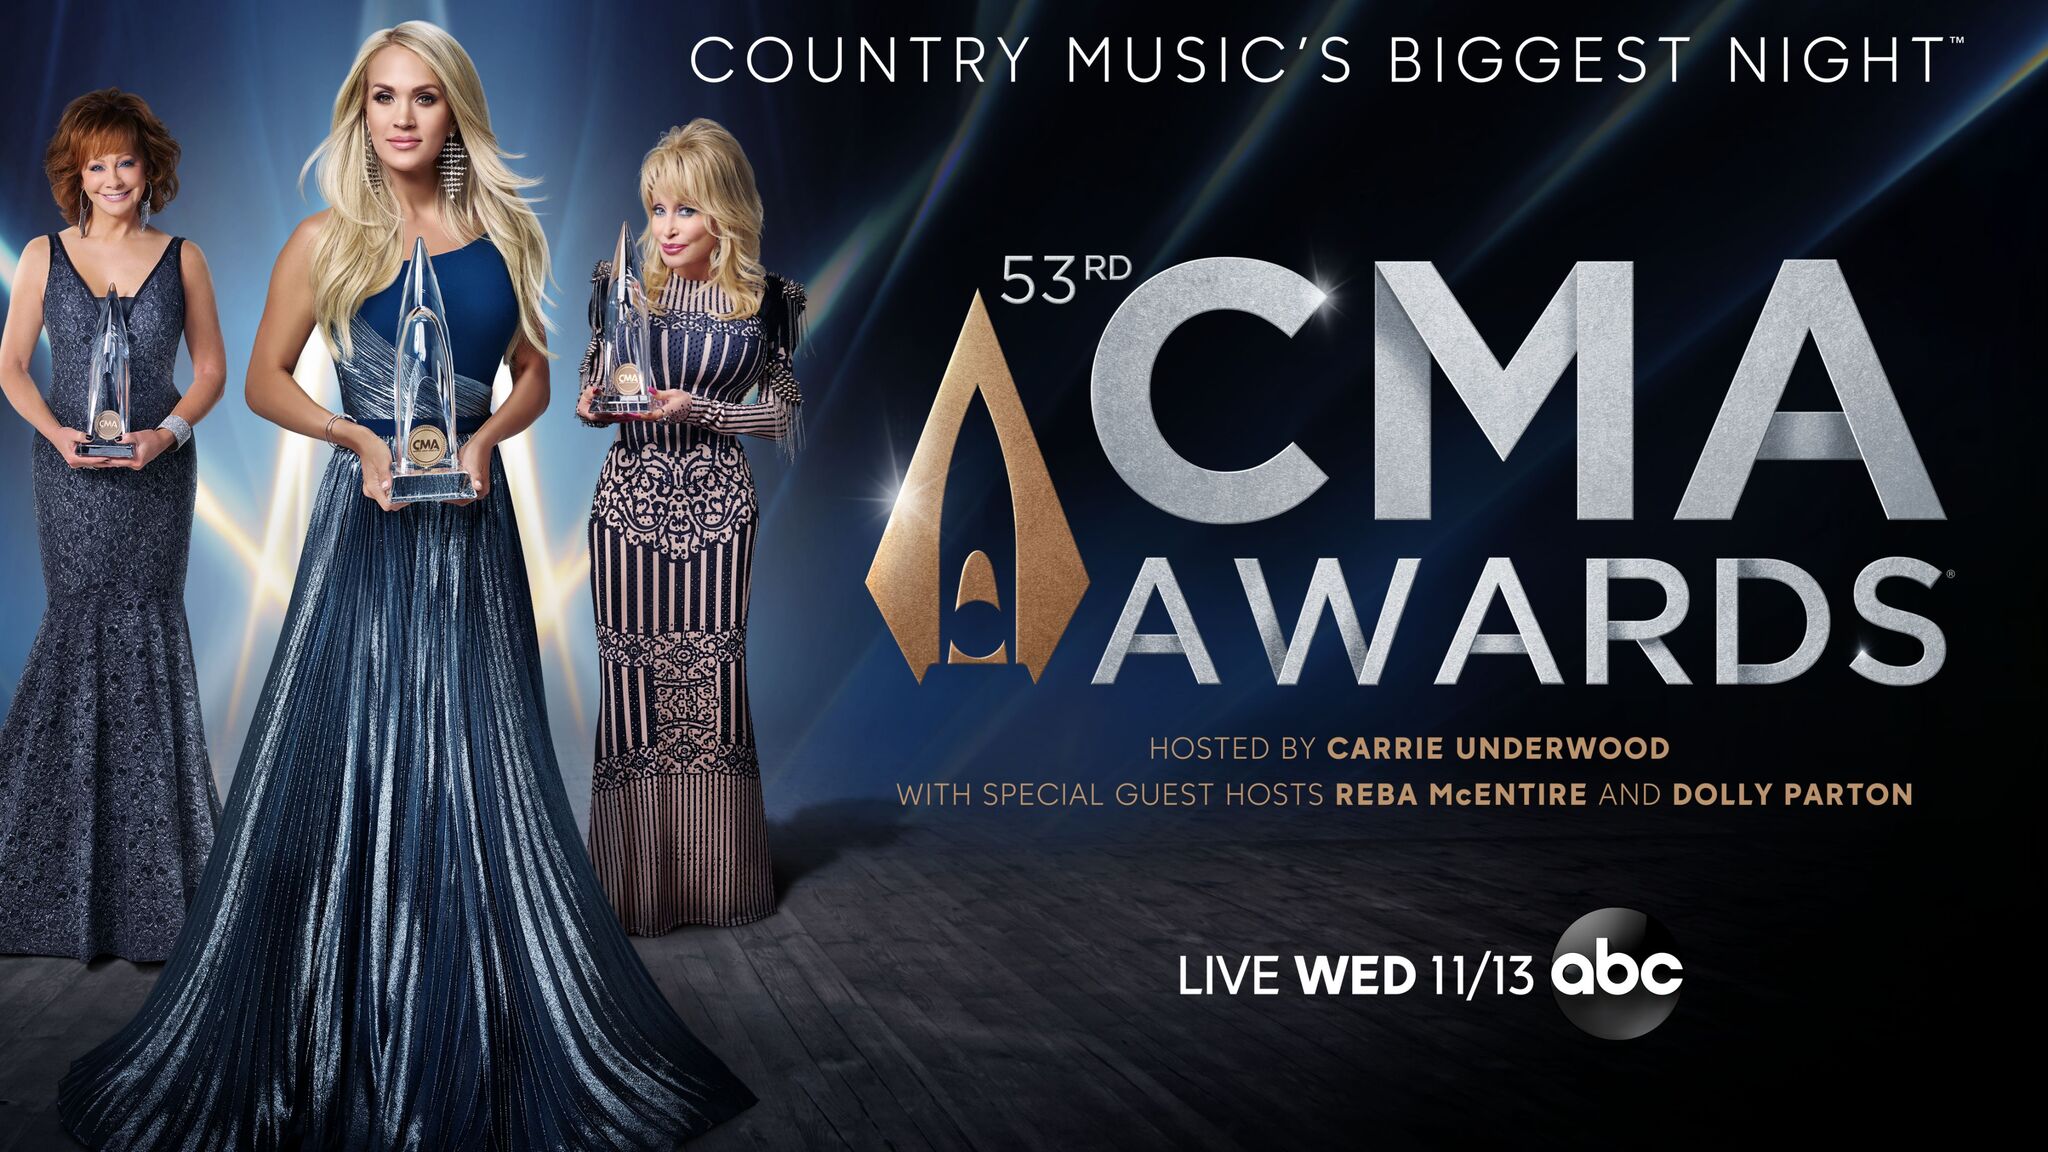 CMA Country Music Awards Show BAMA IMC